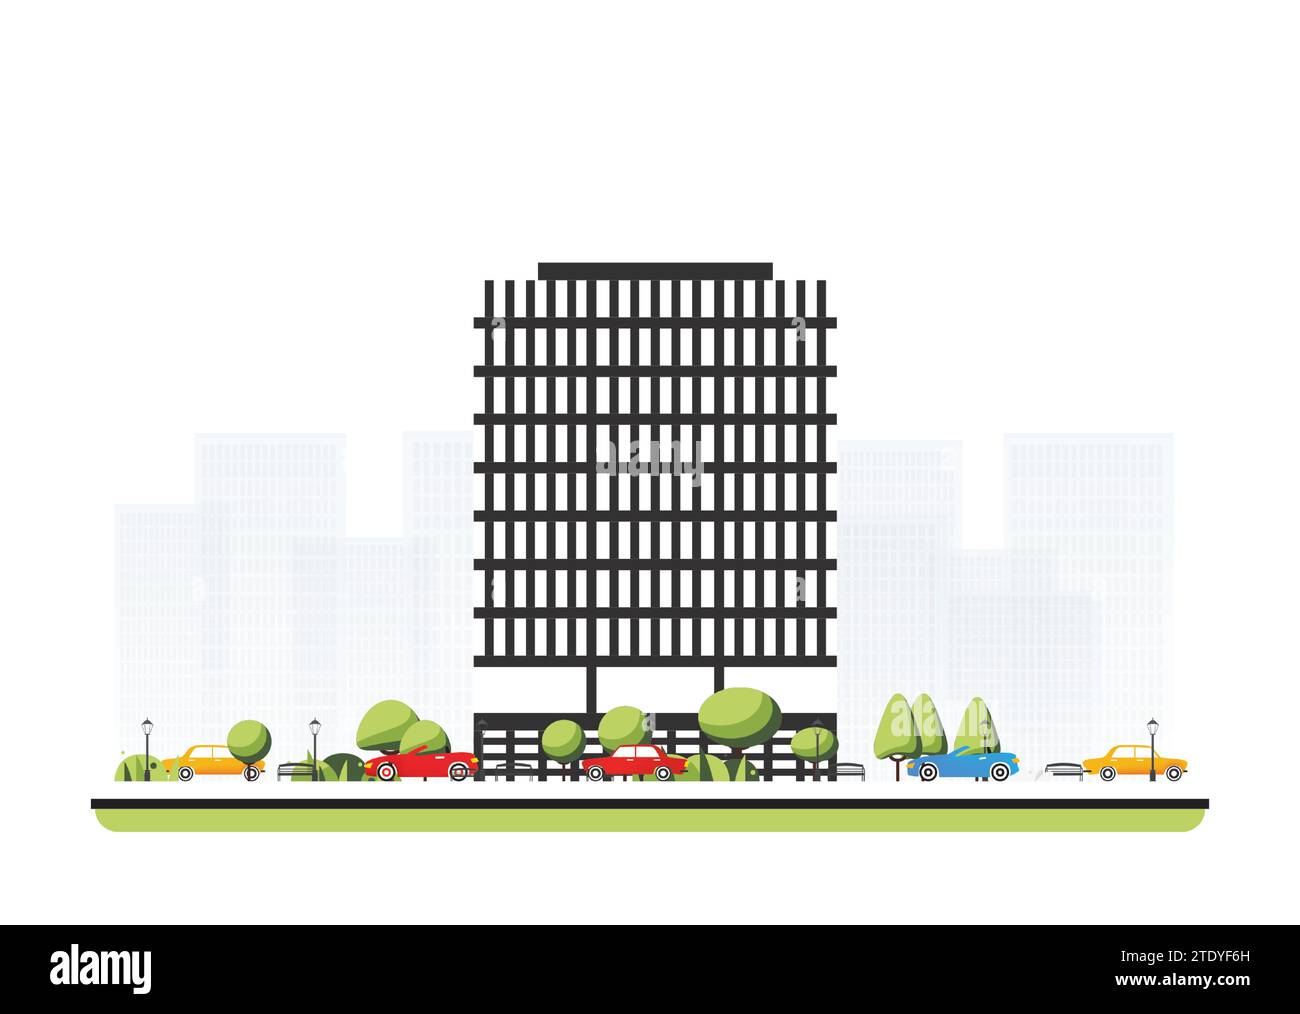 Stadtviertel mit hohem, modernem Gebäude in flachem Stil mit Bäumen und Autos. Vektorabbildung. Stadtszene isoliert auf weißem Hintergrund. Stock Vektor